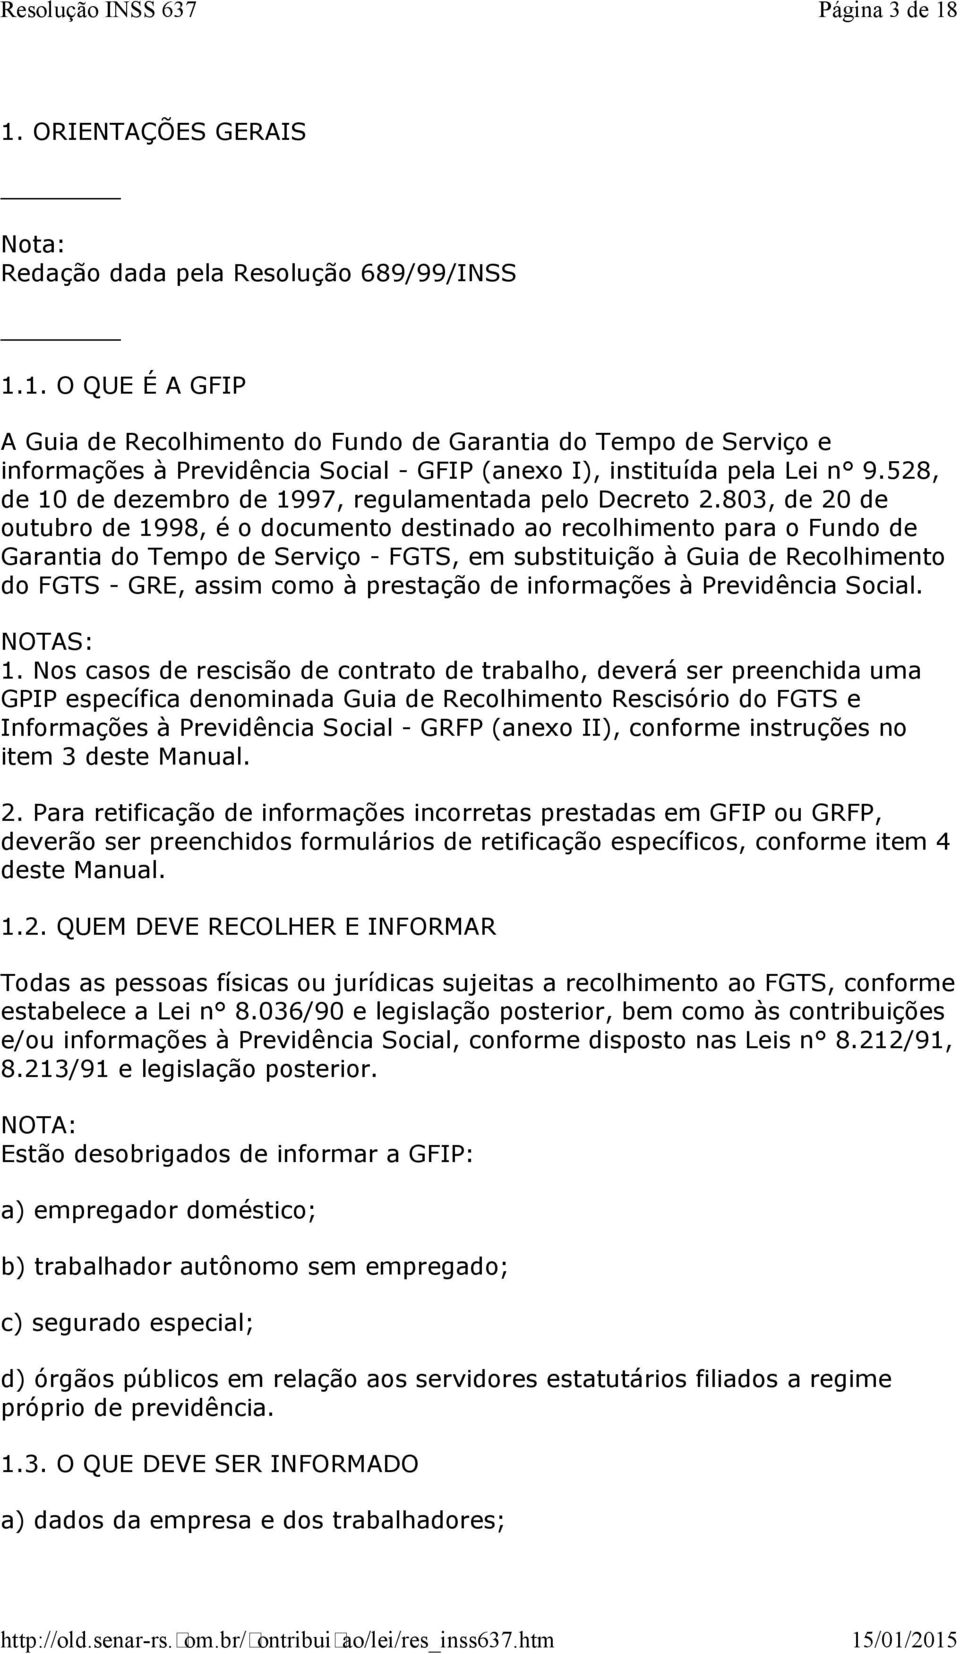 803, de 20 de outubro de 1998, é o documento destinado ao recolhimento para o Fundo de Garantia do Tempo de Serviço - FGTS, em substituição à Guia de Recolhimento do FGTS - GRE, assim como à